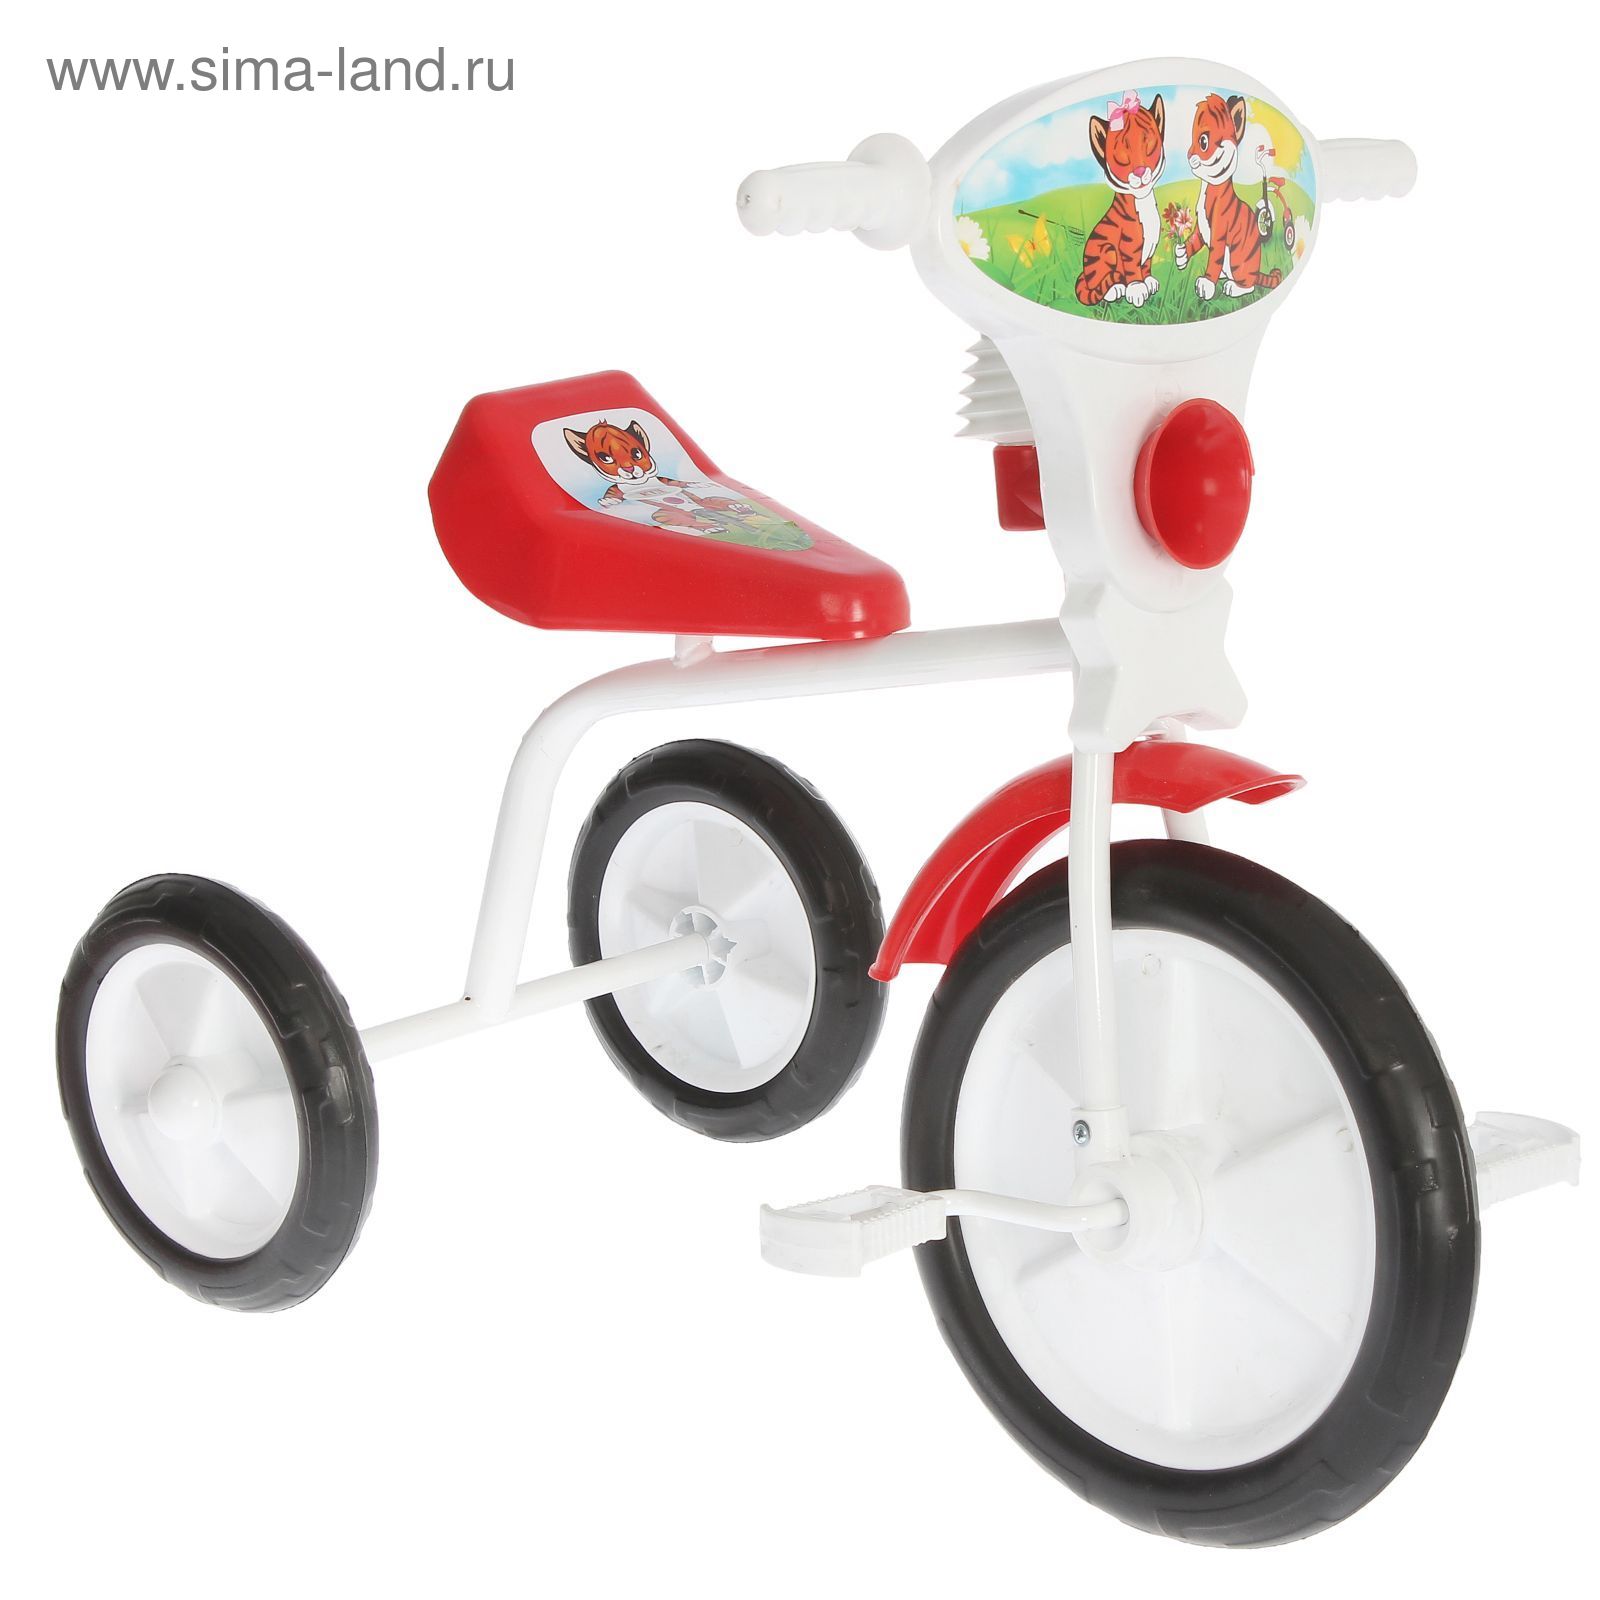 Велосипед трехколесный  "Малыш"  01П, цвет красный, фасовка: 1шт.